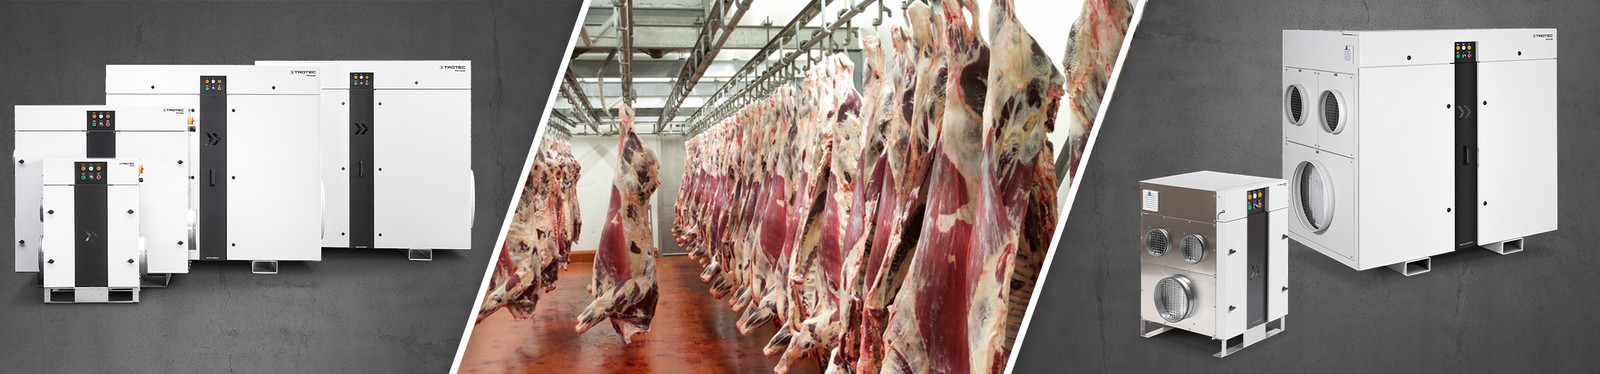 Deshumidificación en la industria de carne - TROTEC